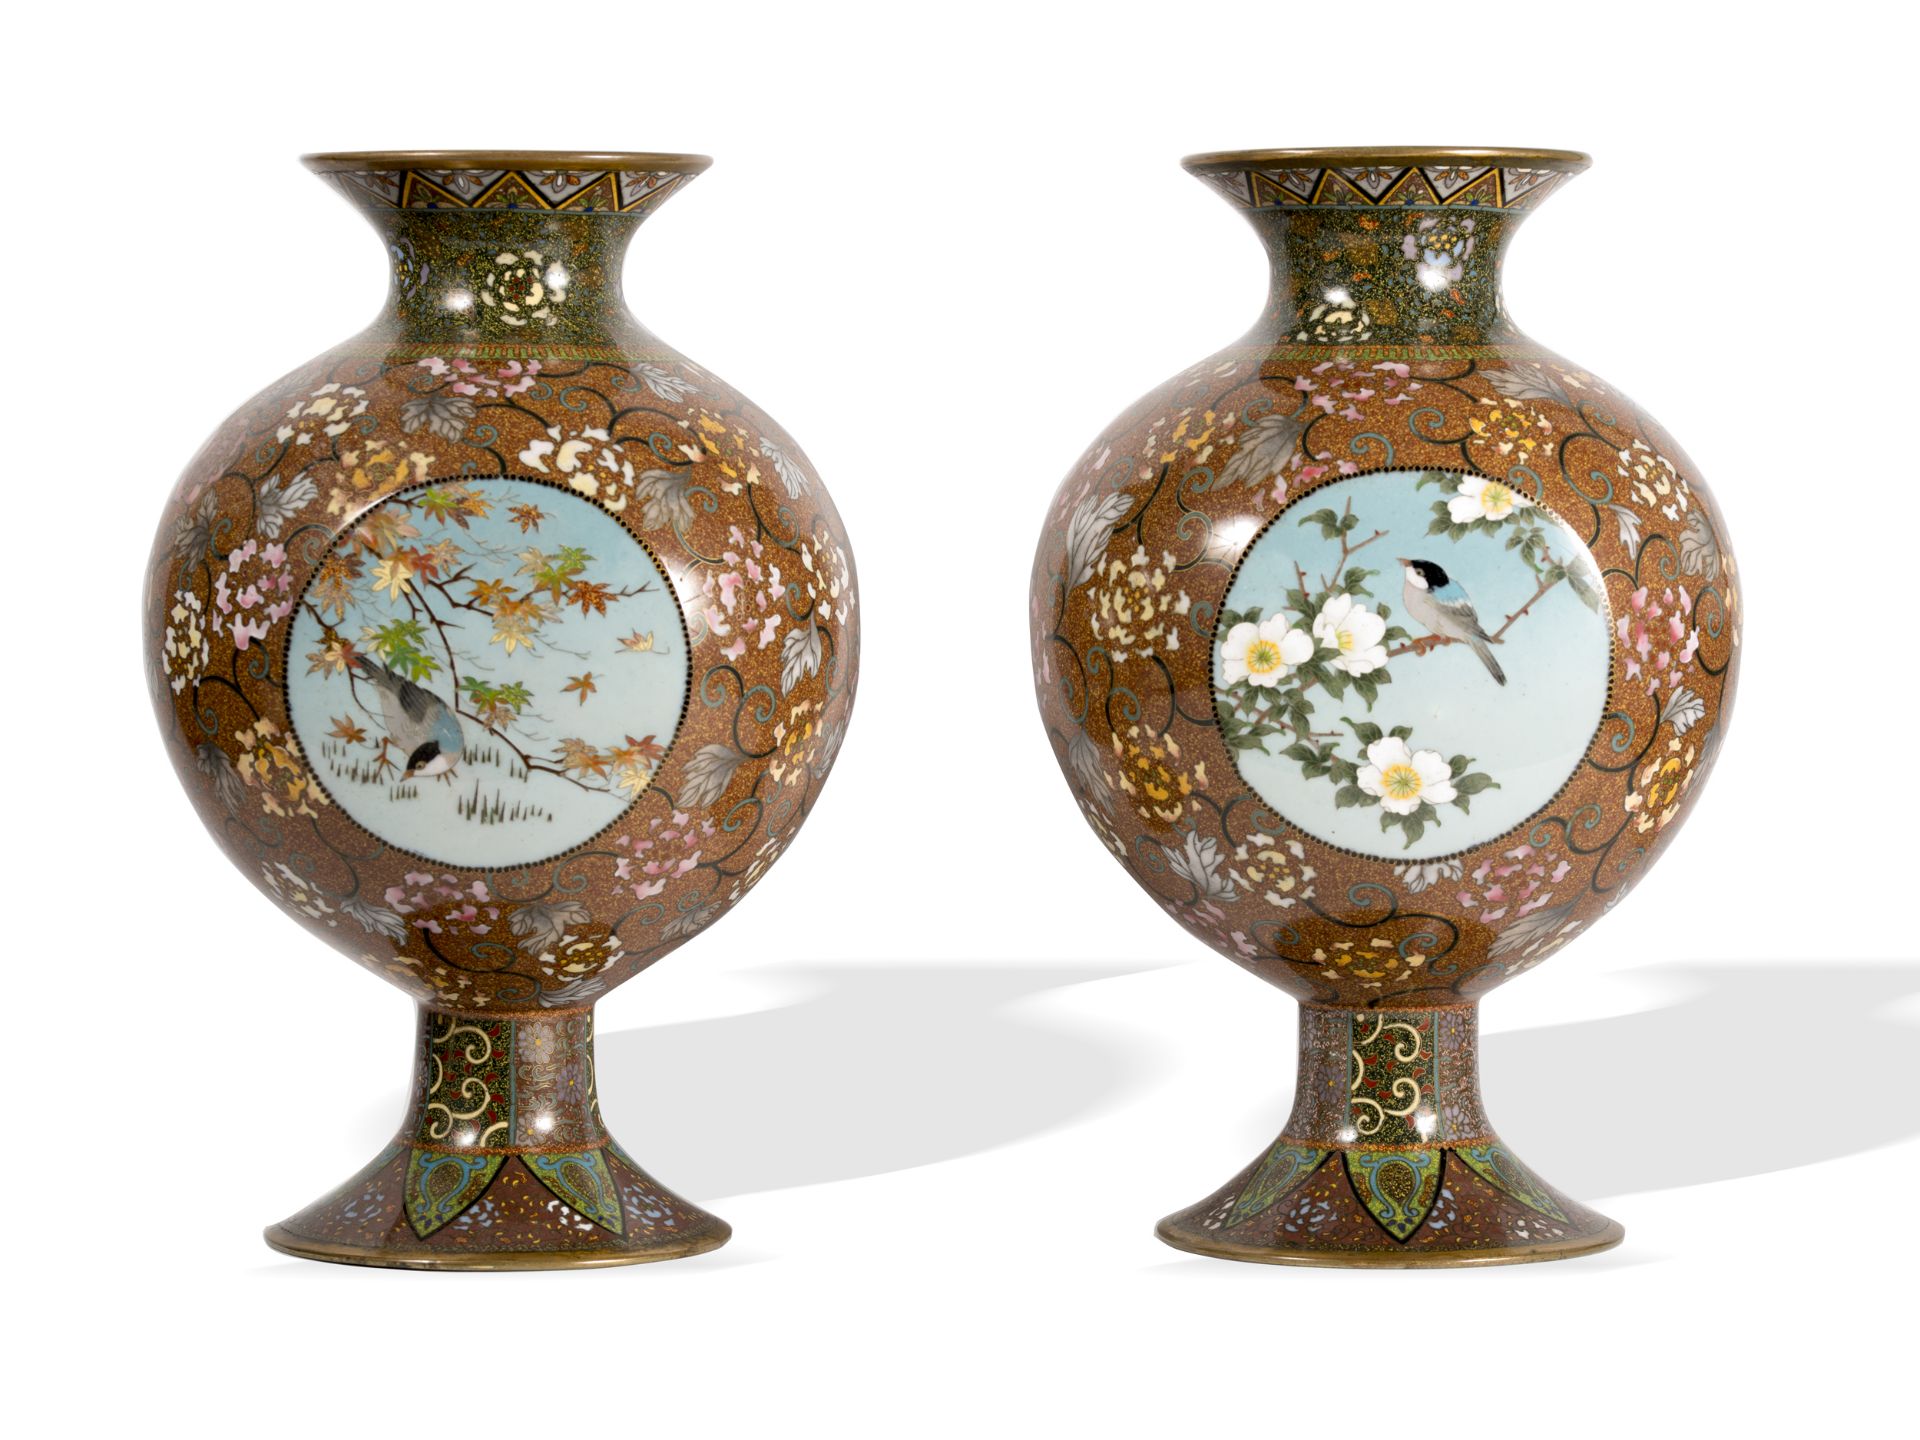 2 cloisonné vases, Asian - Image 3 of 5